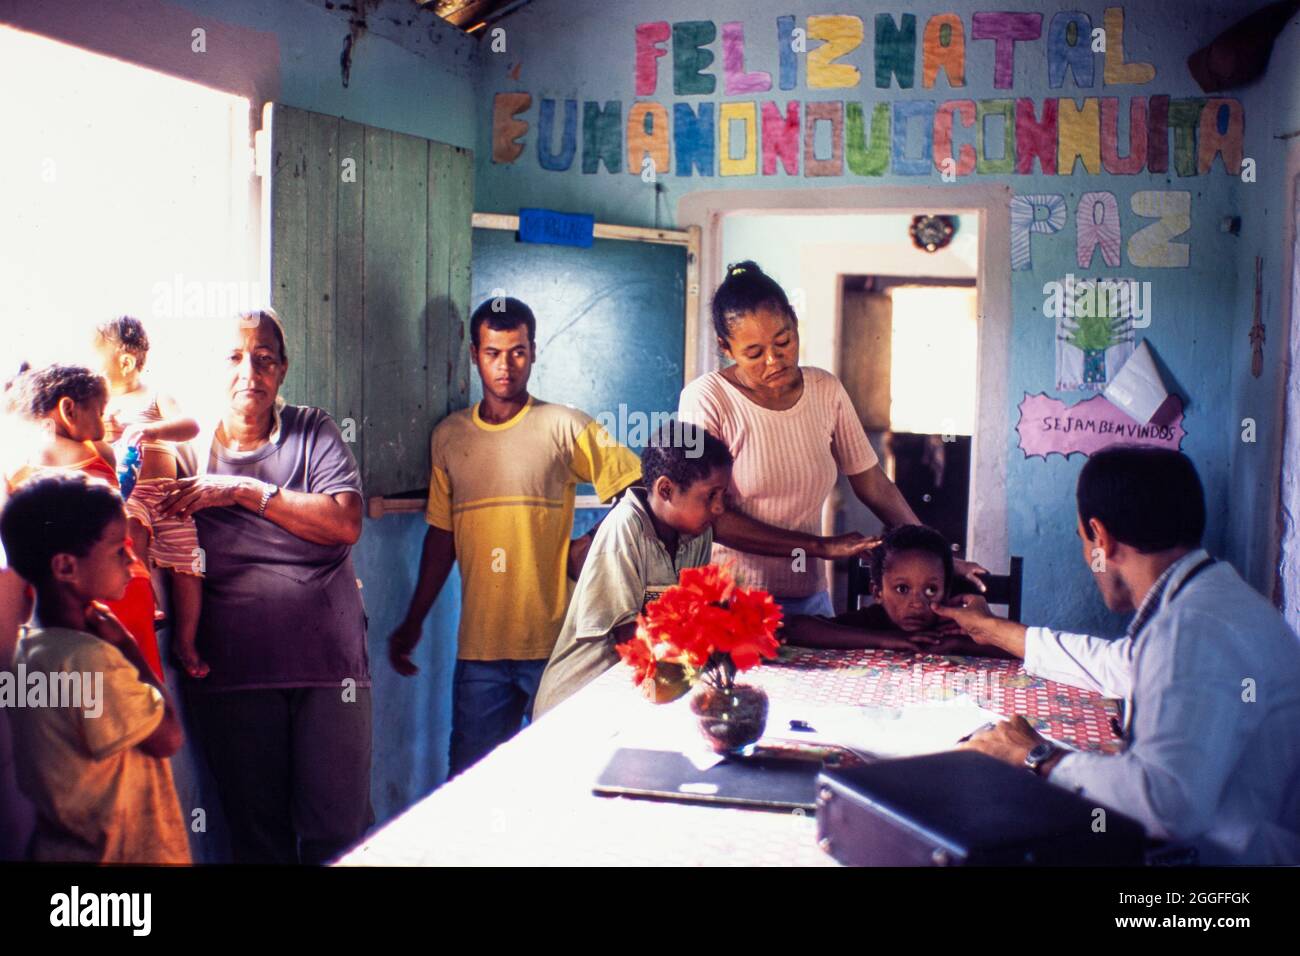 Programa Médico de Familia ( Programa Médico de Familia ) apoyado por el Gobierno de Brasil - Las familias pobres de las zonas rurales de Brasil reciben atención médica y medicina familiar en la escuela rural local, sobre la base del conocimiento del paciente en el contexto de la familia y la comunidad, haciendo hincapié en la prevención de enfermedades y la promoción de la salud. Foto de stock